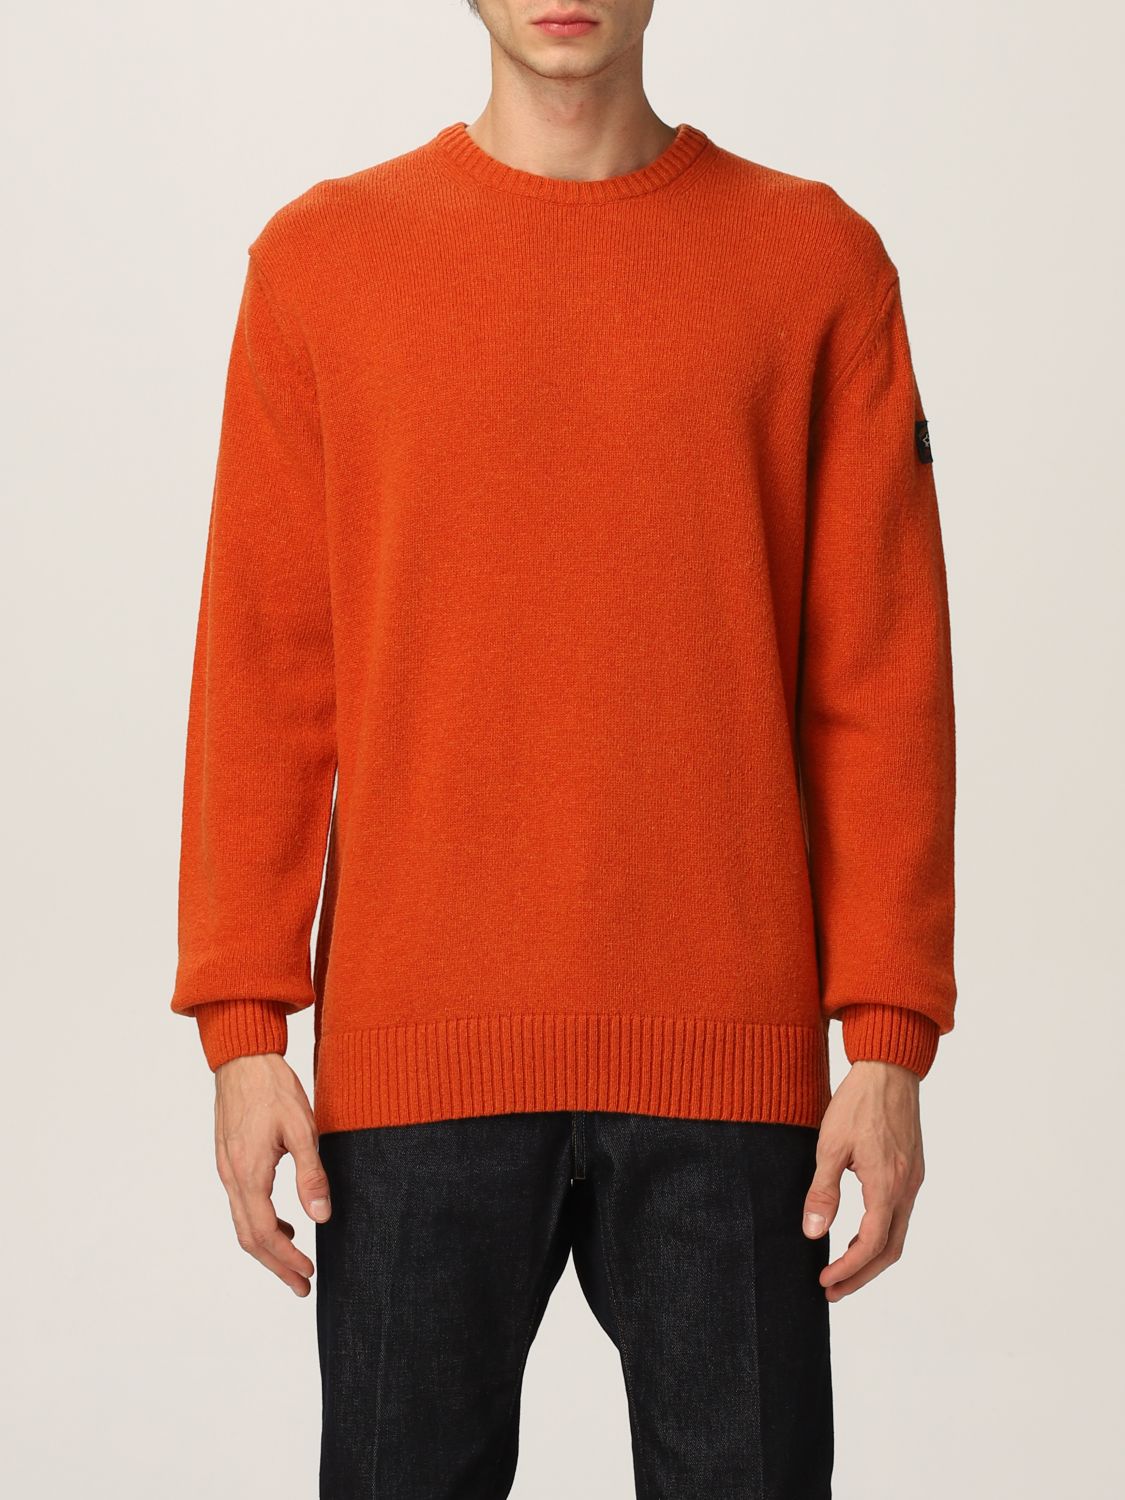 PAUL & SHARK: sweater for man - Orange | Paul & Shark sweater C0P1061 ...